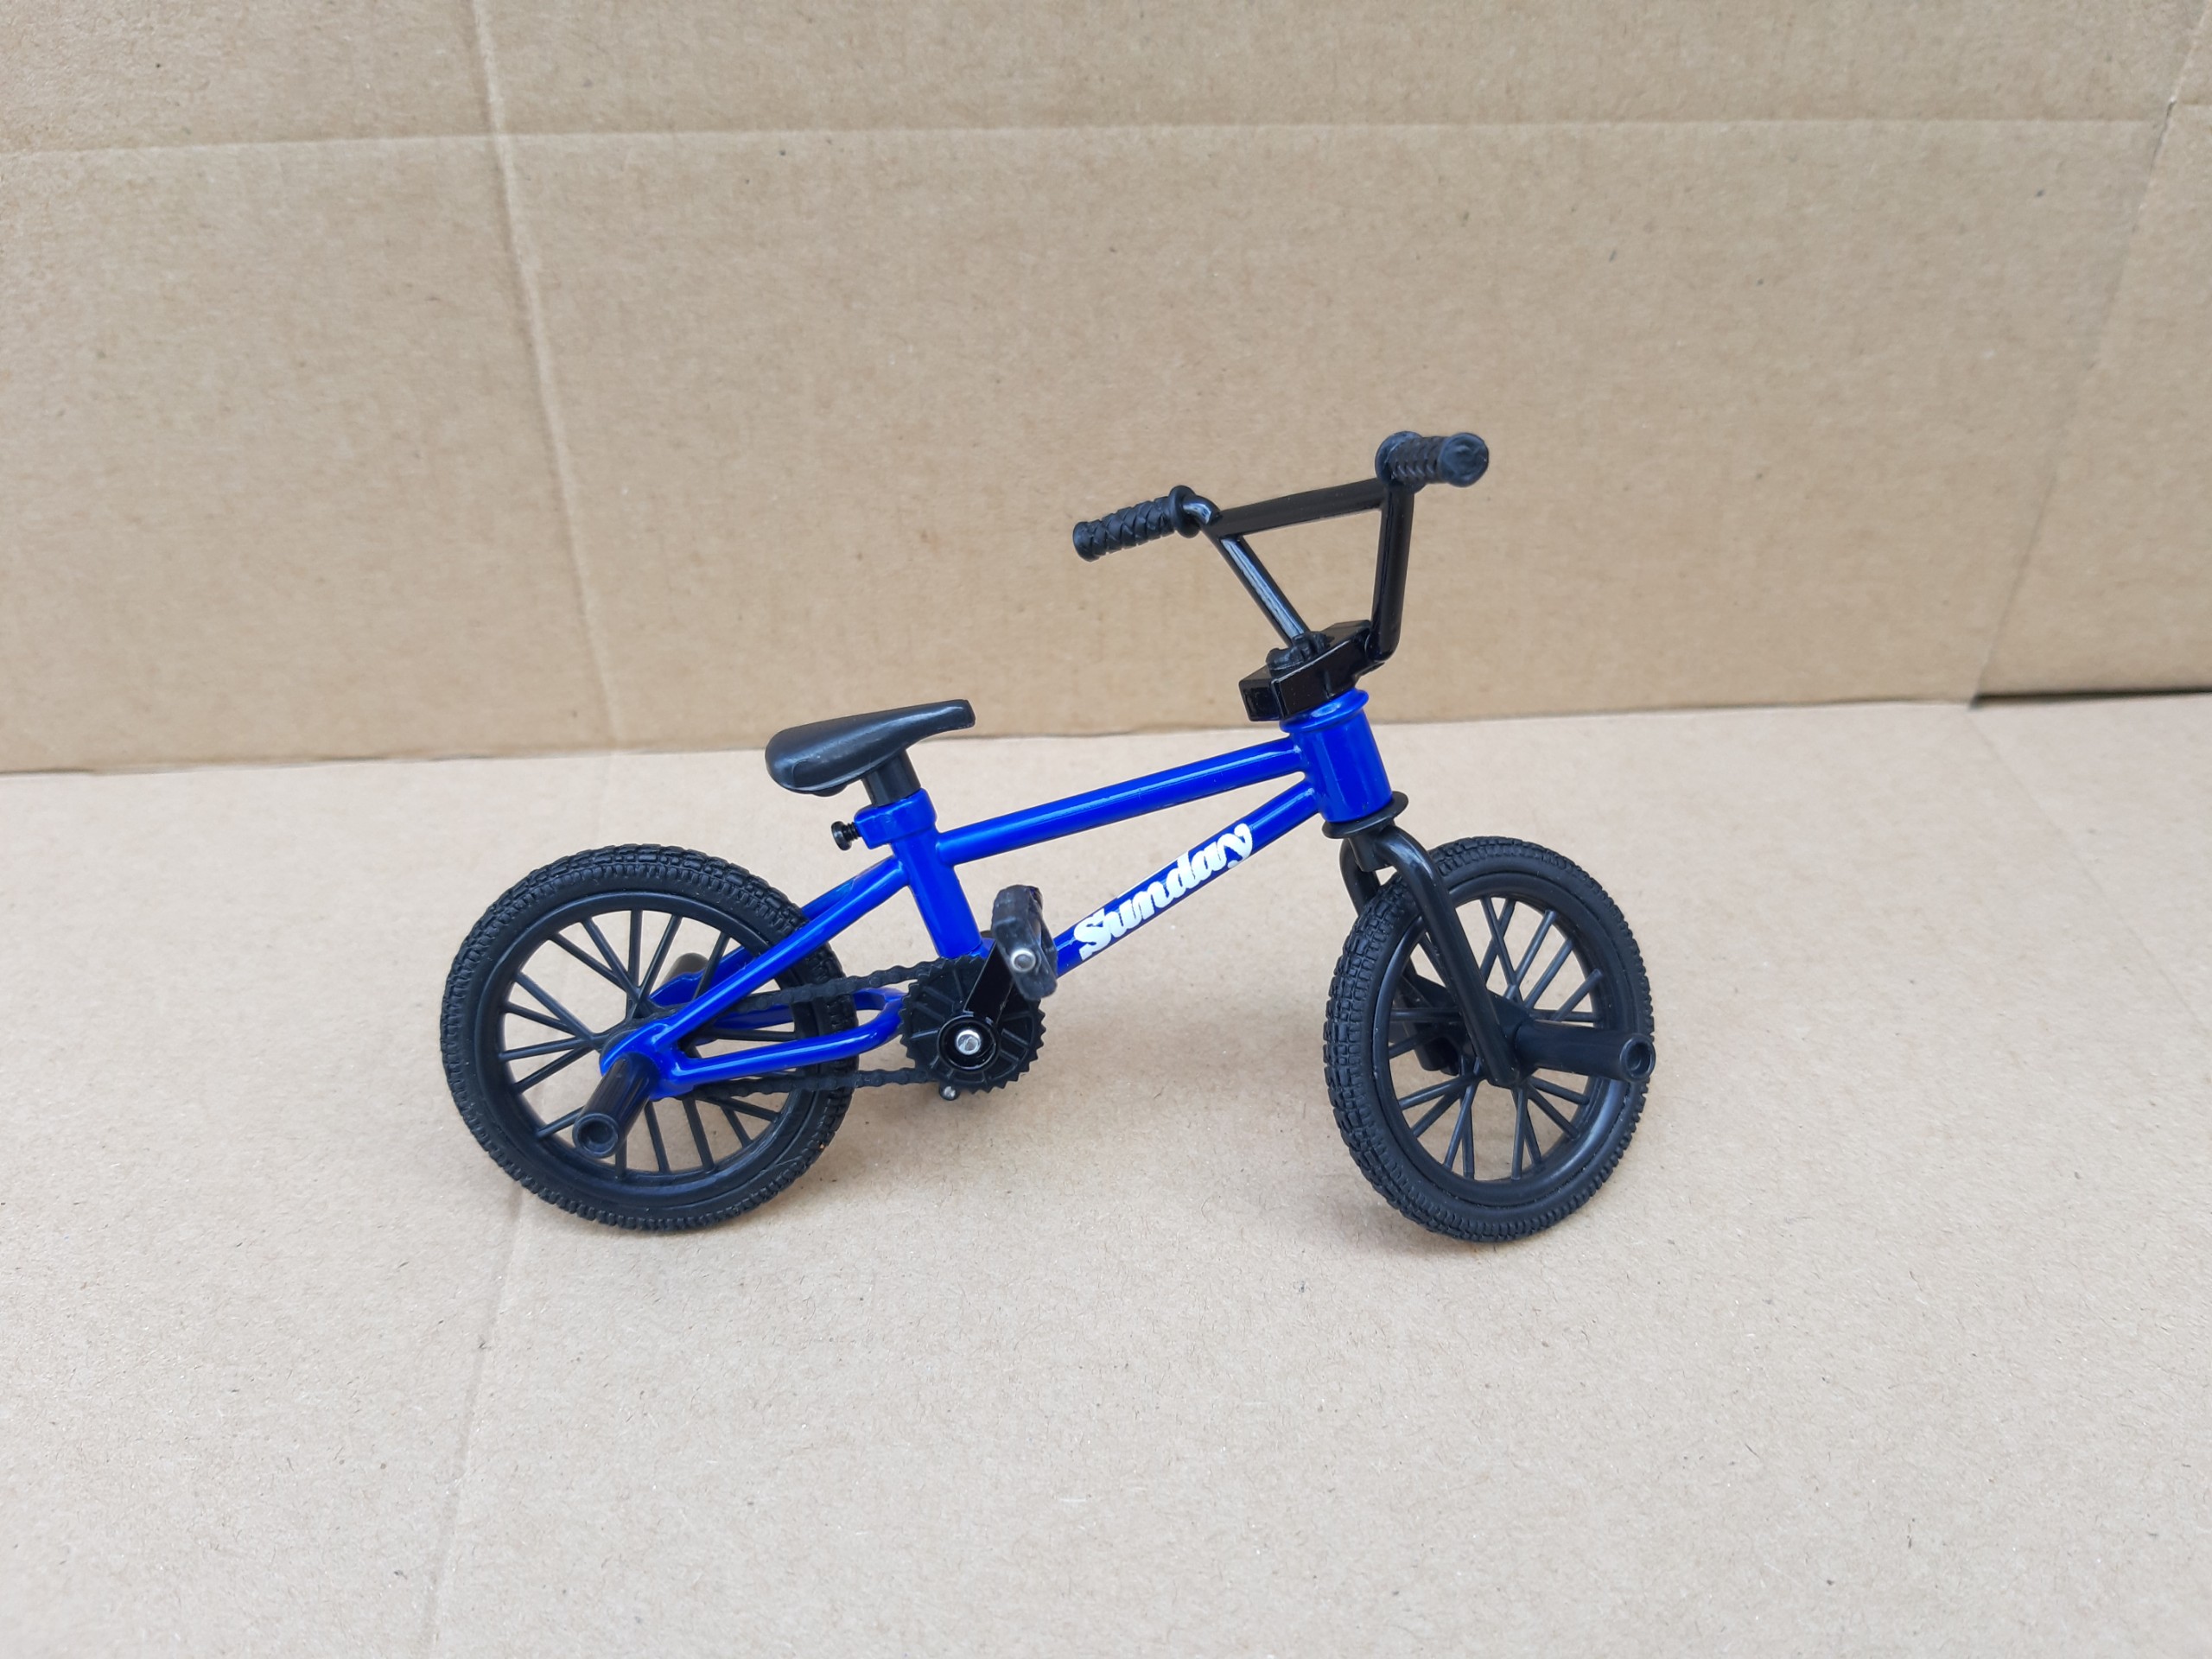 Mô hình xe đạp địa hình Spin Master màu xanh dương bánh đen rất đẹp giá rẻ